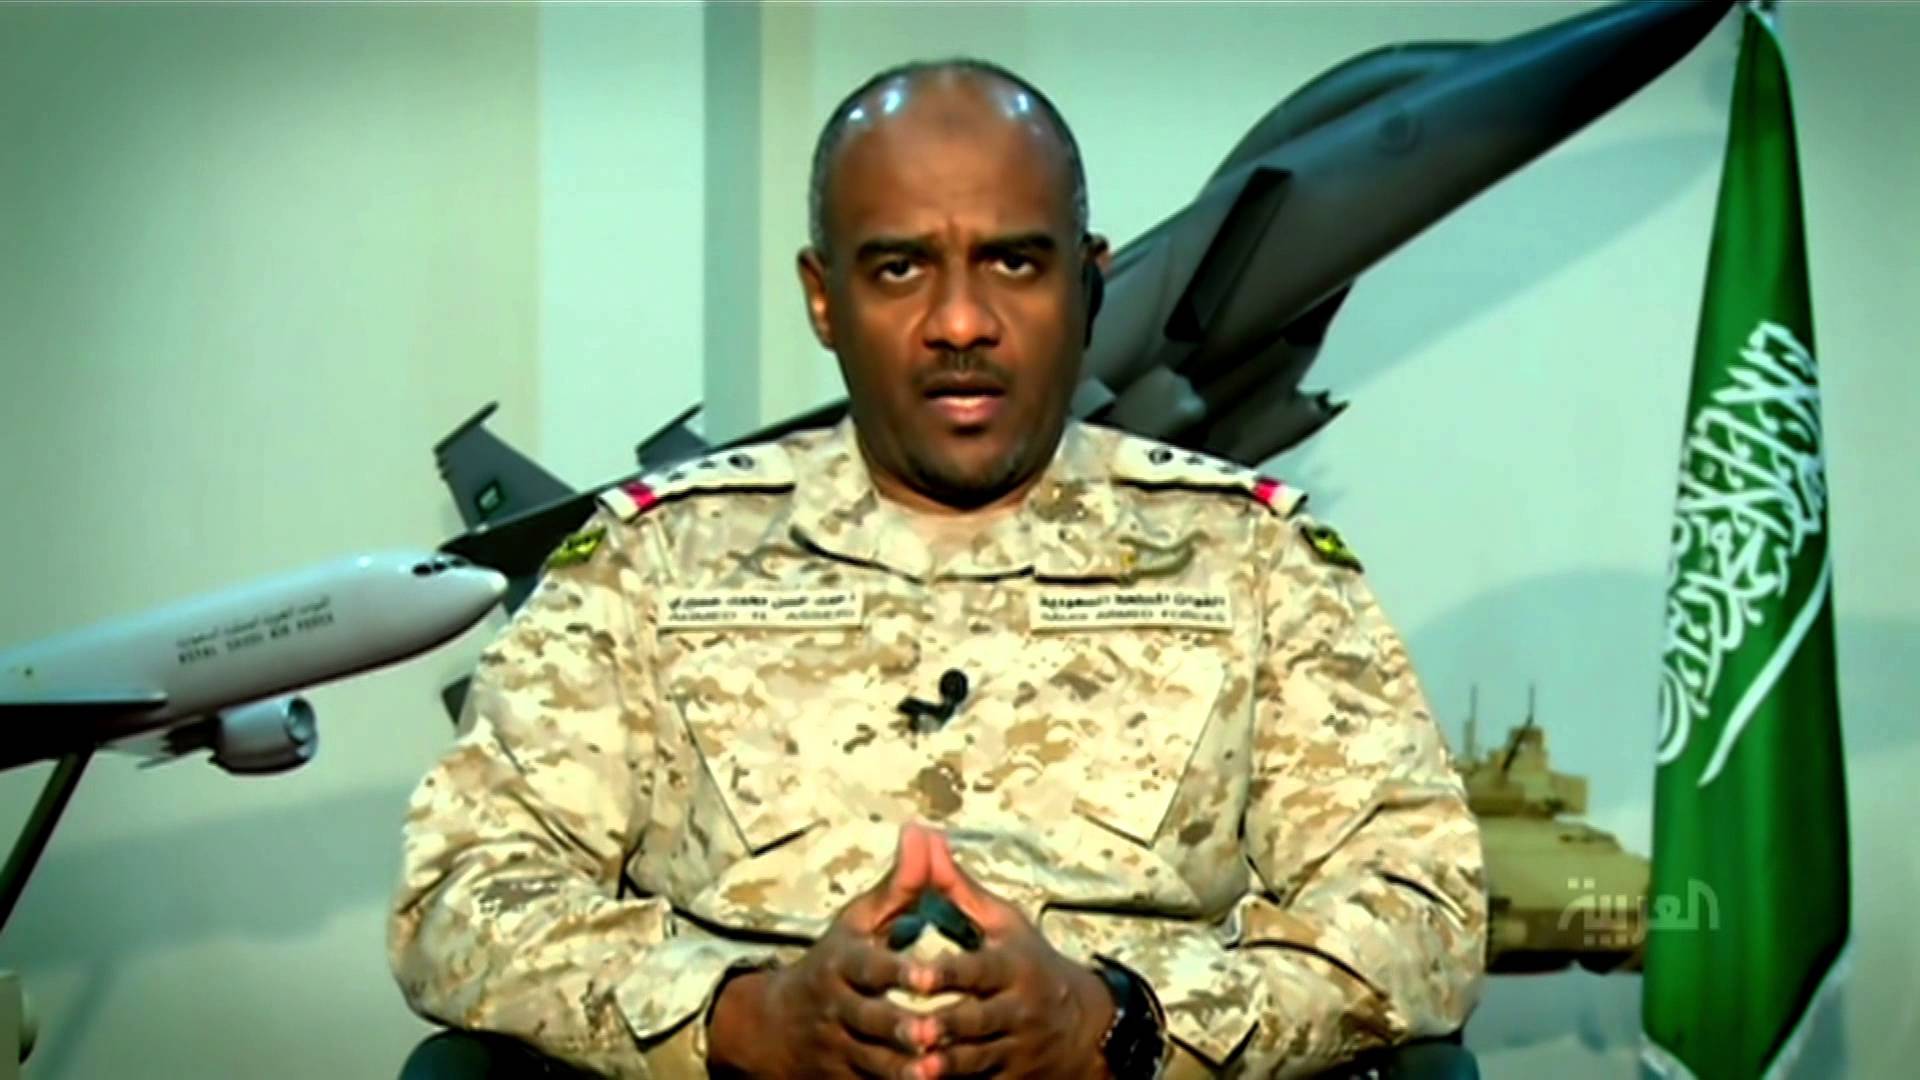 اللواء أحمد عسيري يكشف السبب الحقيقي لتدخل السعودية والتحالف في اليمن (فيديو)